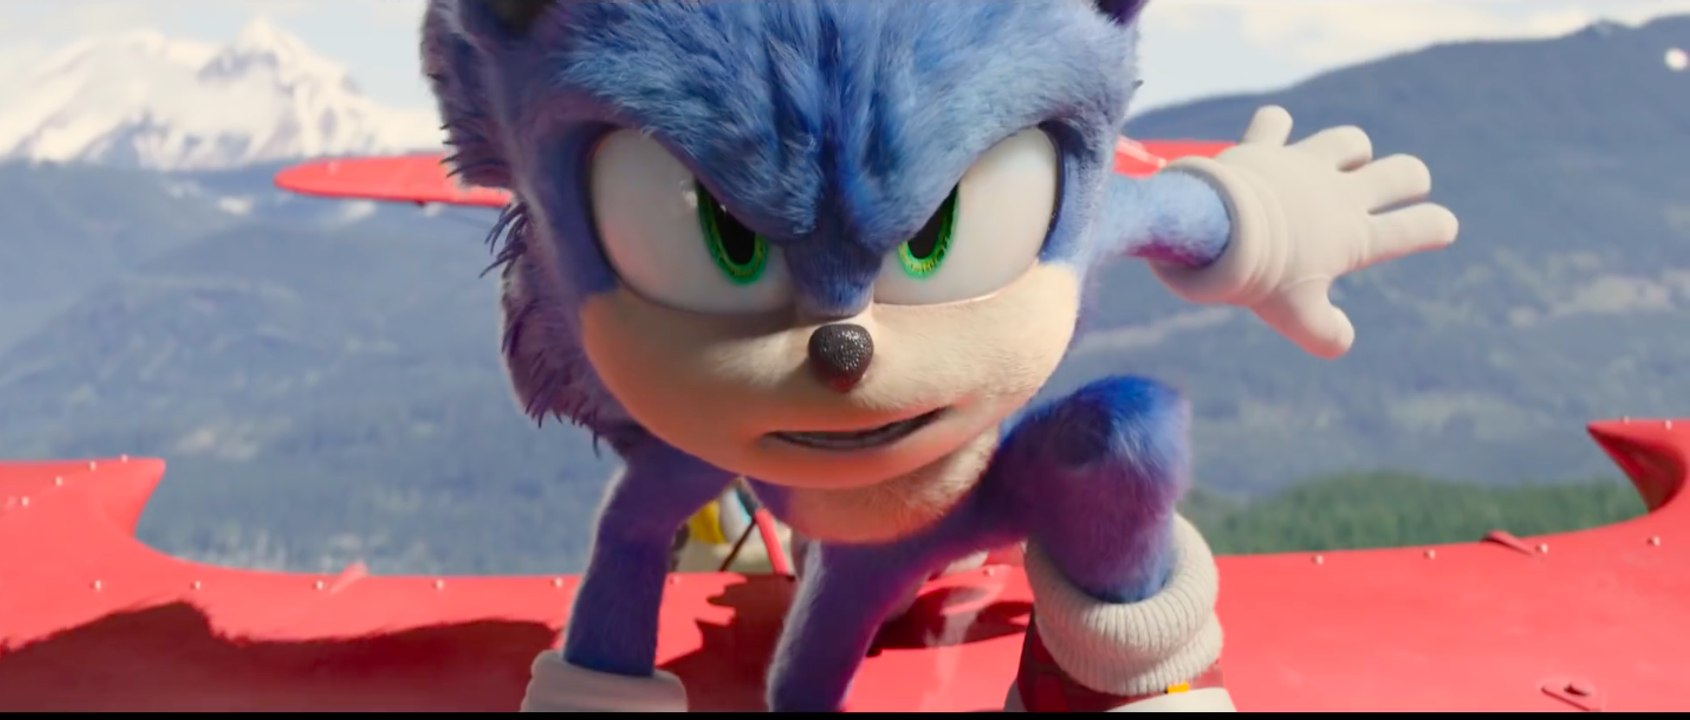 Sonic the Hedgehog 2 - Trailer (Deutsch) HD